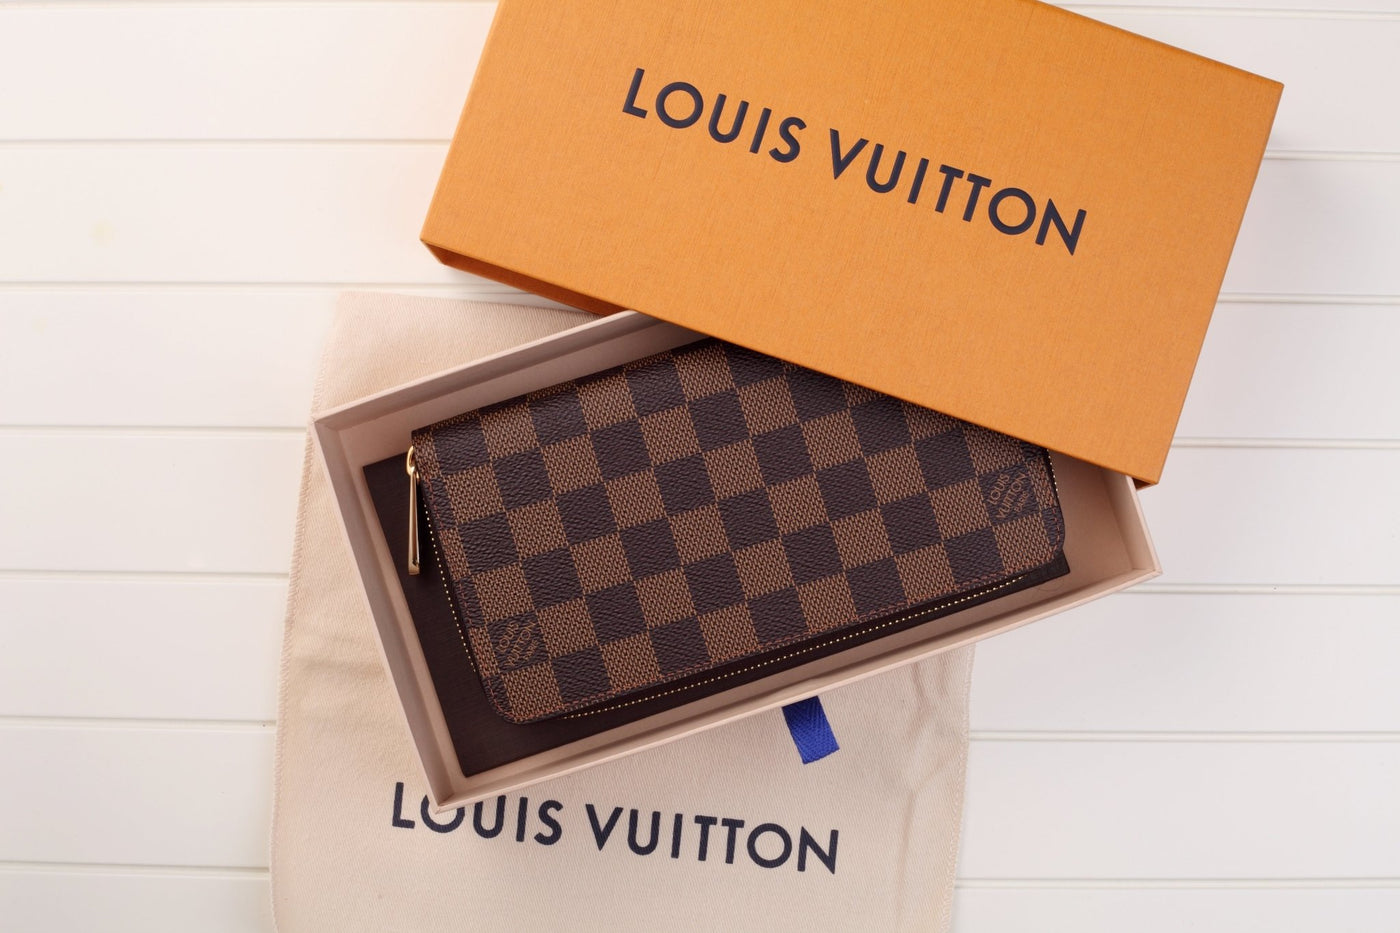 LOUIS VUITTON WALLETS | Luxury Cheaper